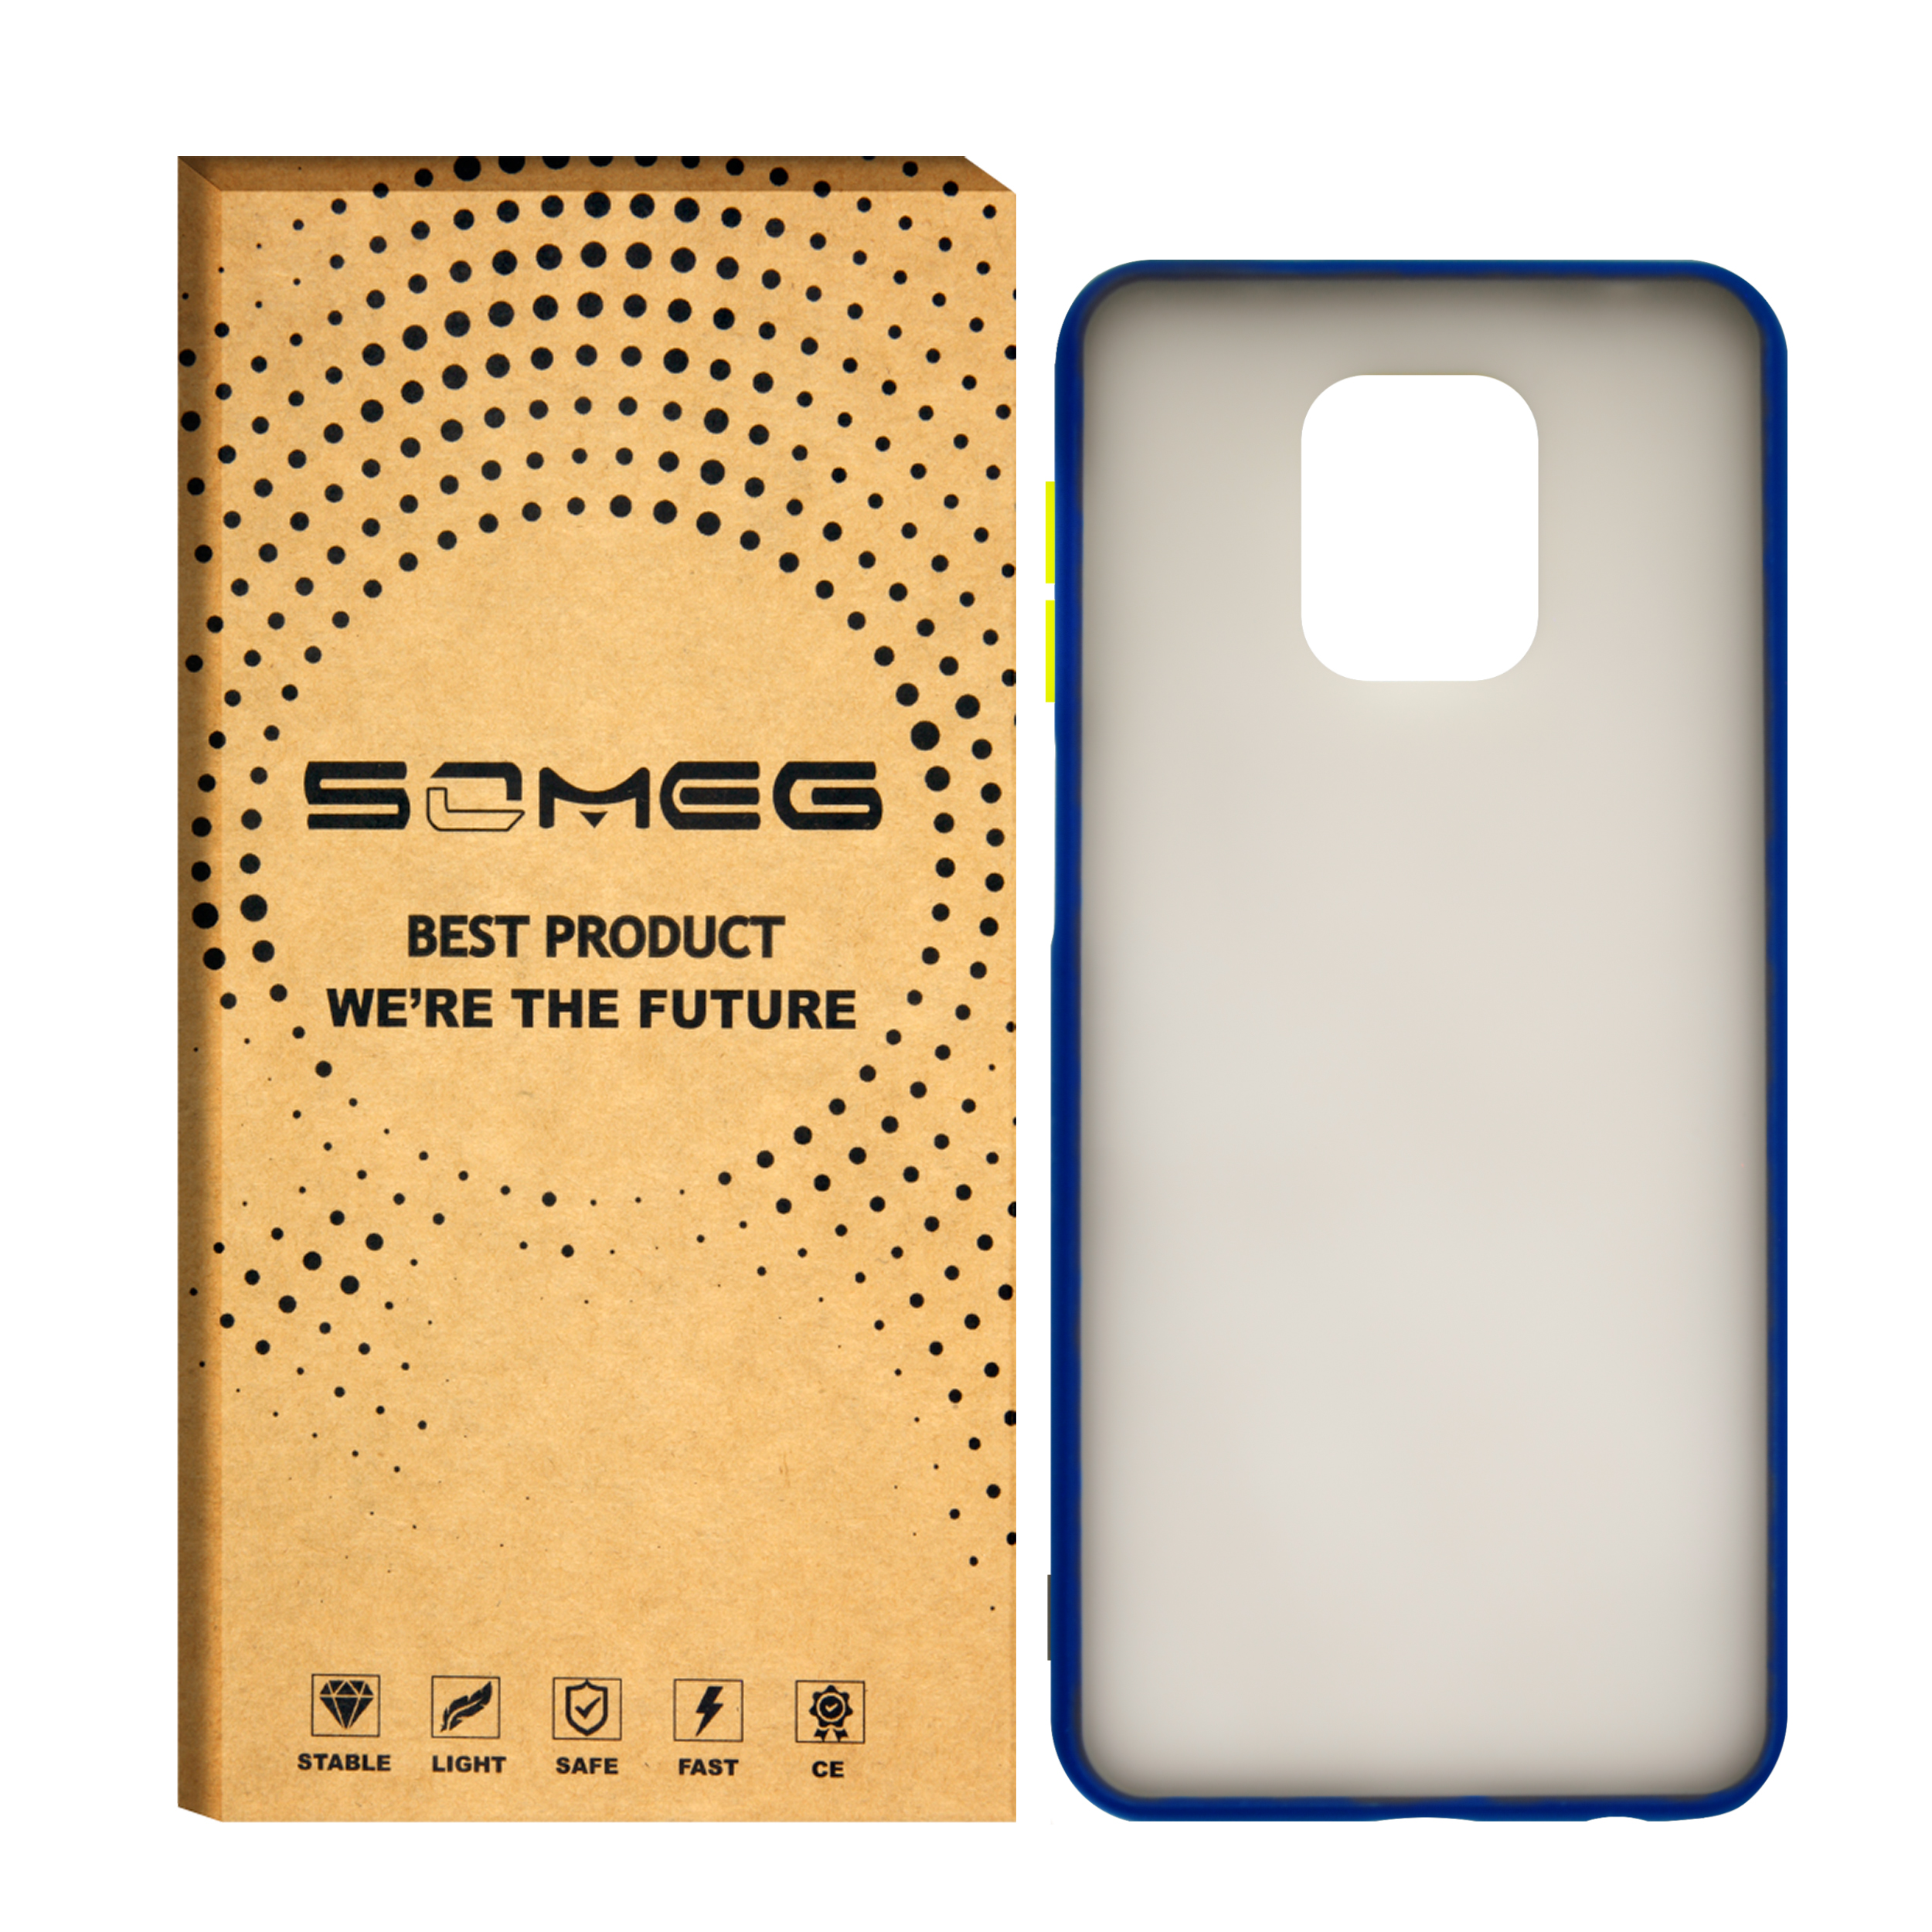 کاور سومگ مدل SMG-Mt9 مناسب برای گوشی موبایل شیائومی Redmi Note 9 / Redmi Note 9 Pro